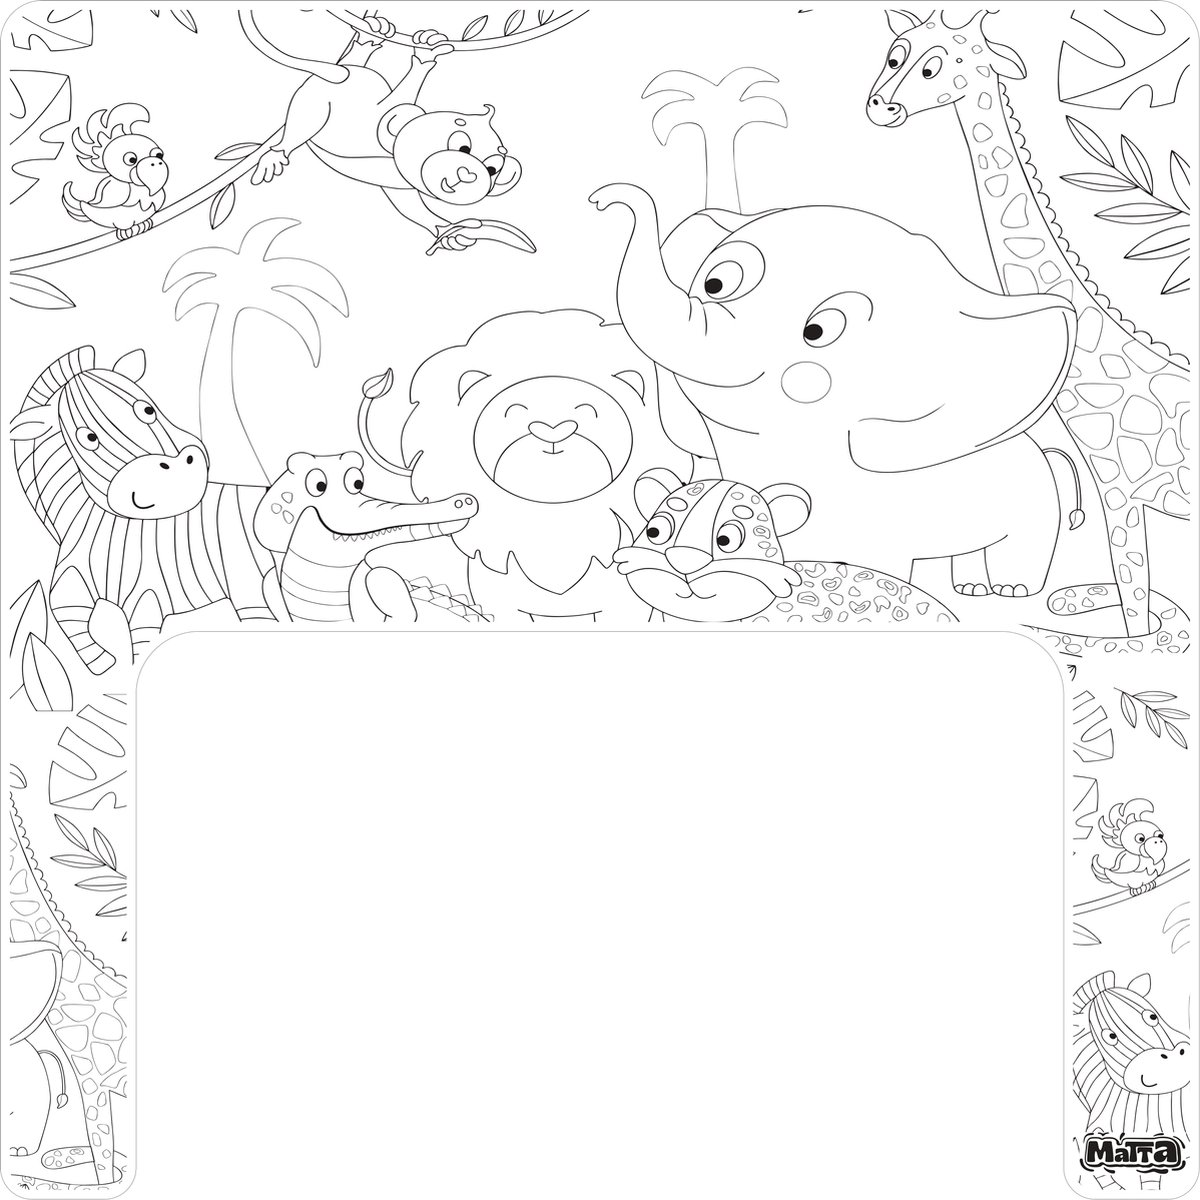 Matta Kids - Jungle Explorer - Herbruikbare Kleurplaat en Veegplacemat - Past op Ikea Antilop